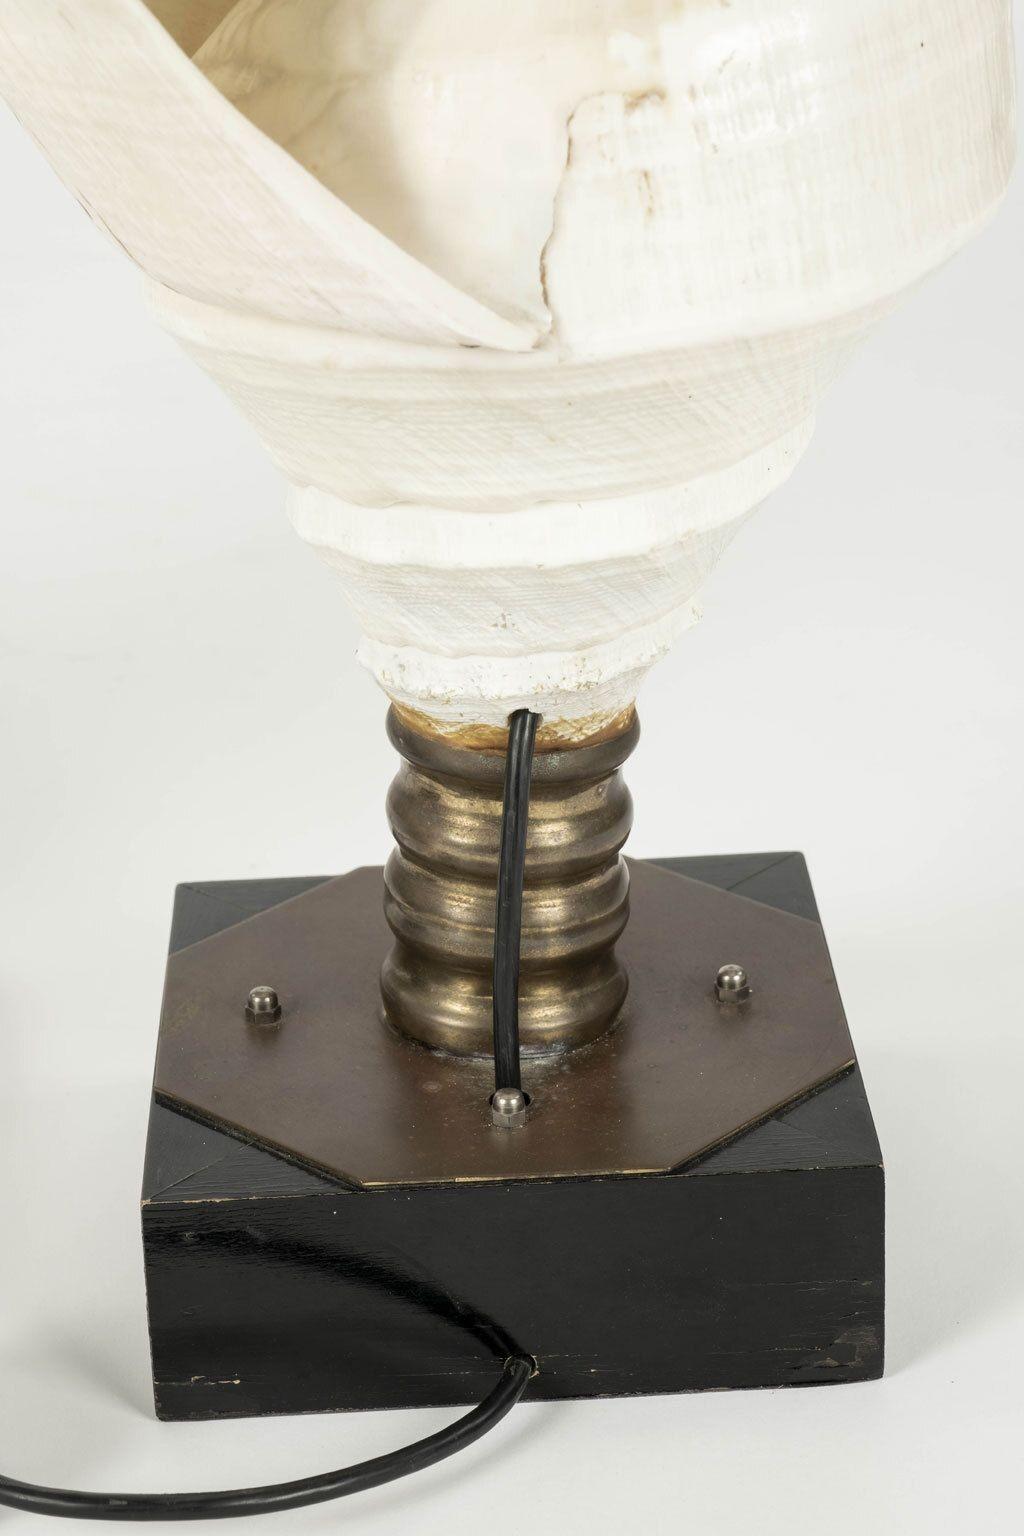 Grandes lampes vintage en forme de coquille de conque datant des années 1970. Coquilles montées sur des socles en laiton et en bois. Paire de lampes uniques, nouvellement câblées pour une utilisation aux Etats-Unis (originaires de France). La